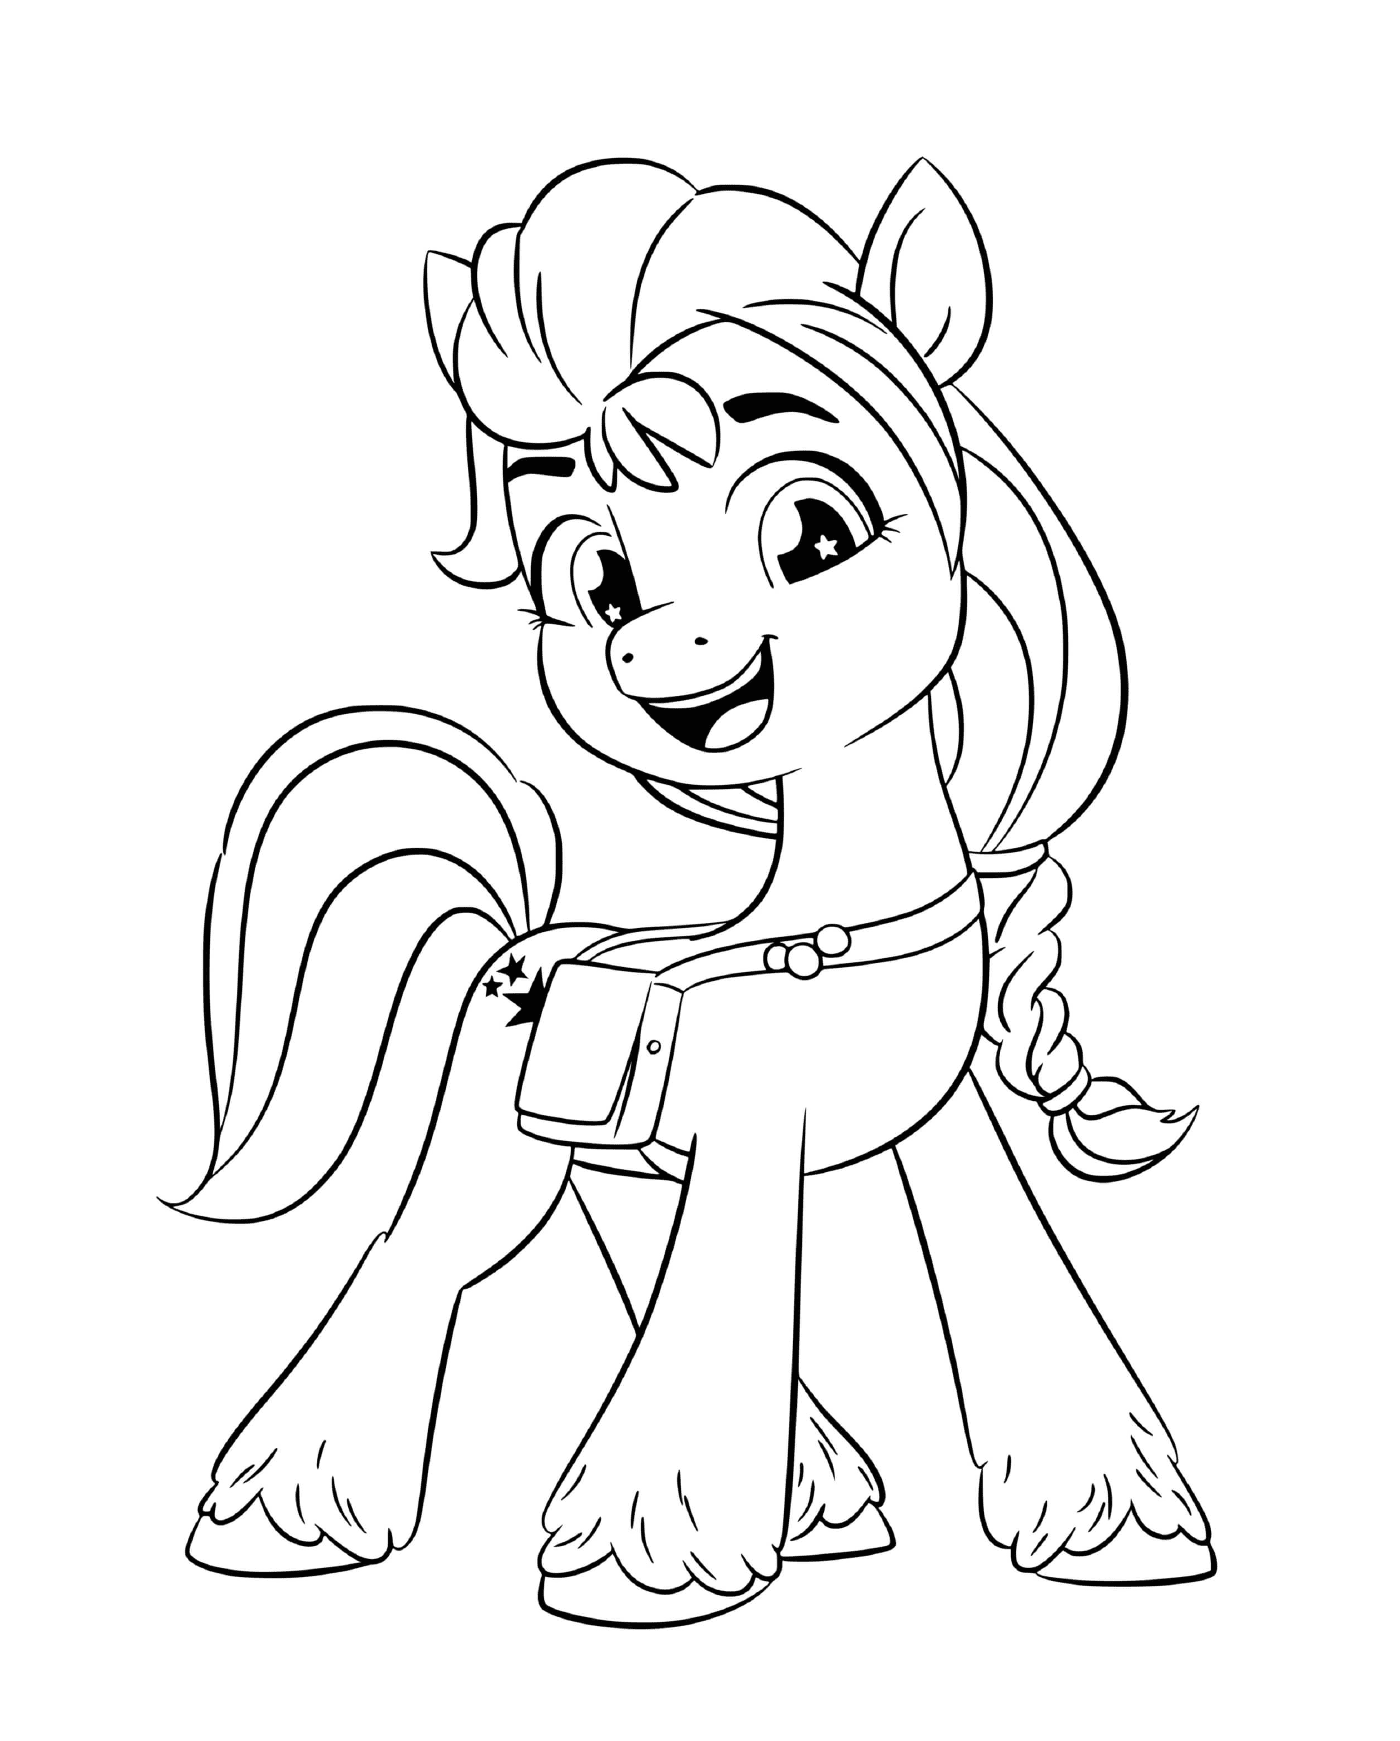  Soleado Starscout, de moda pony con bolsa 